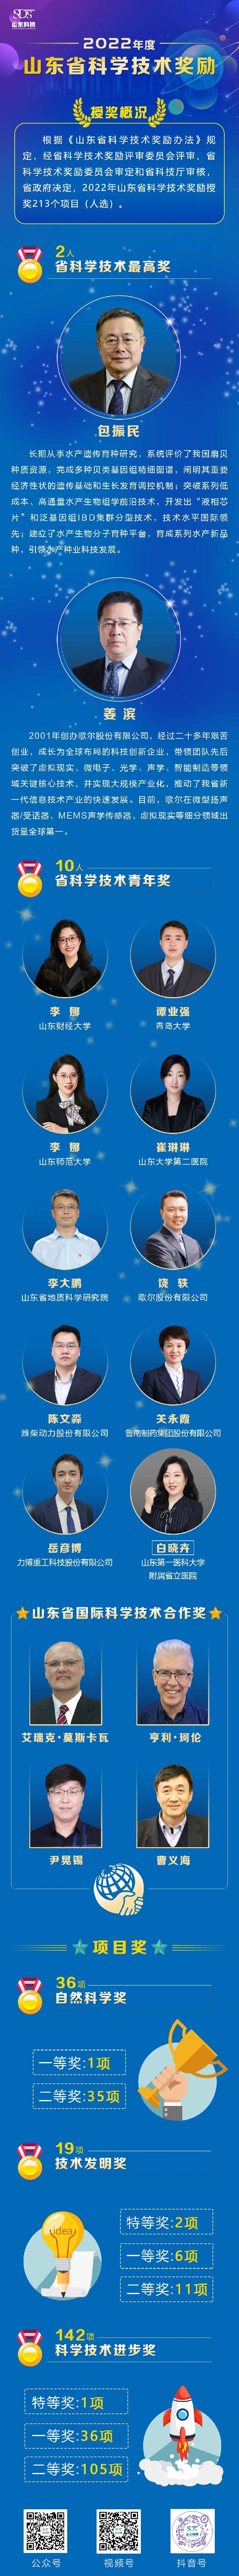 山东省科技创新大会召开，包振民、姜滨获省科学技术最高奖